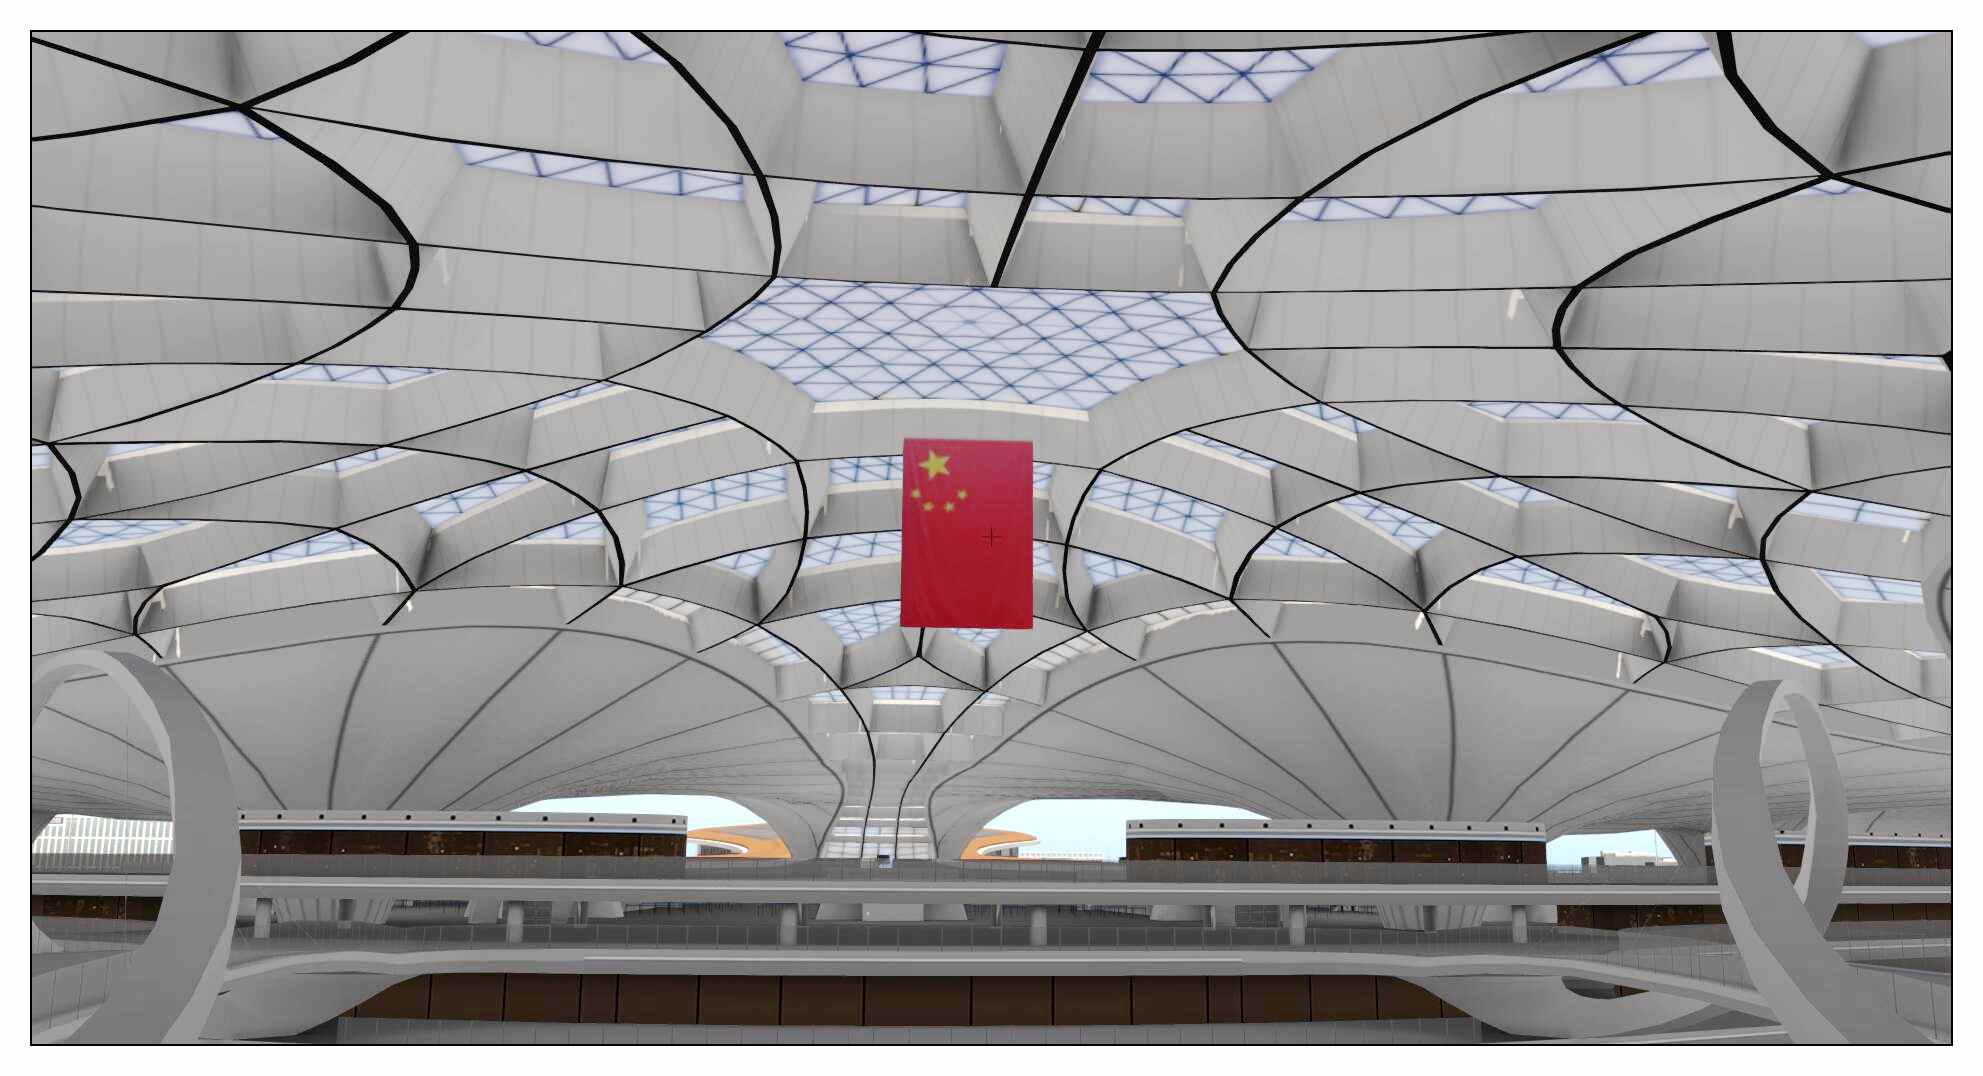 【X-Plane】ZBAD北京大兴国际机场-正式发布-7744 